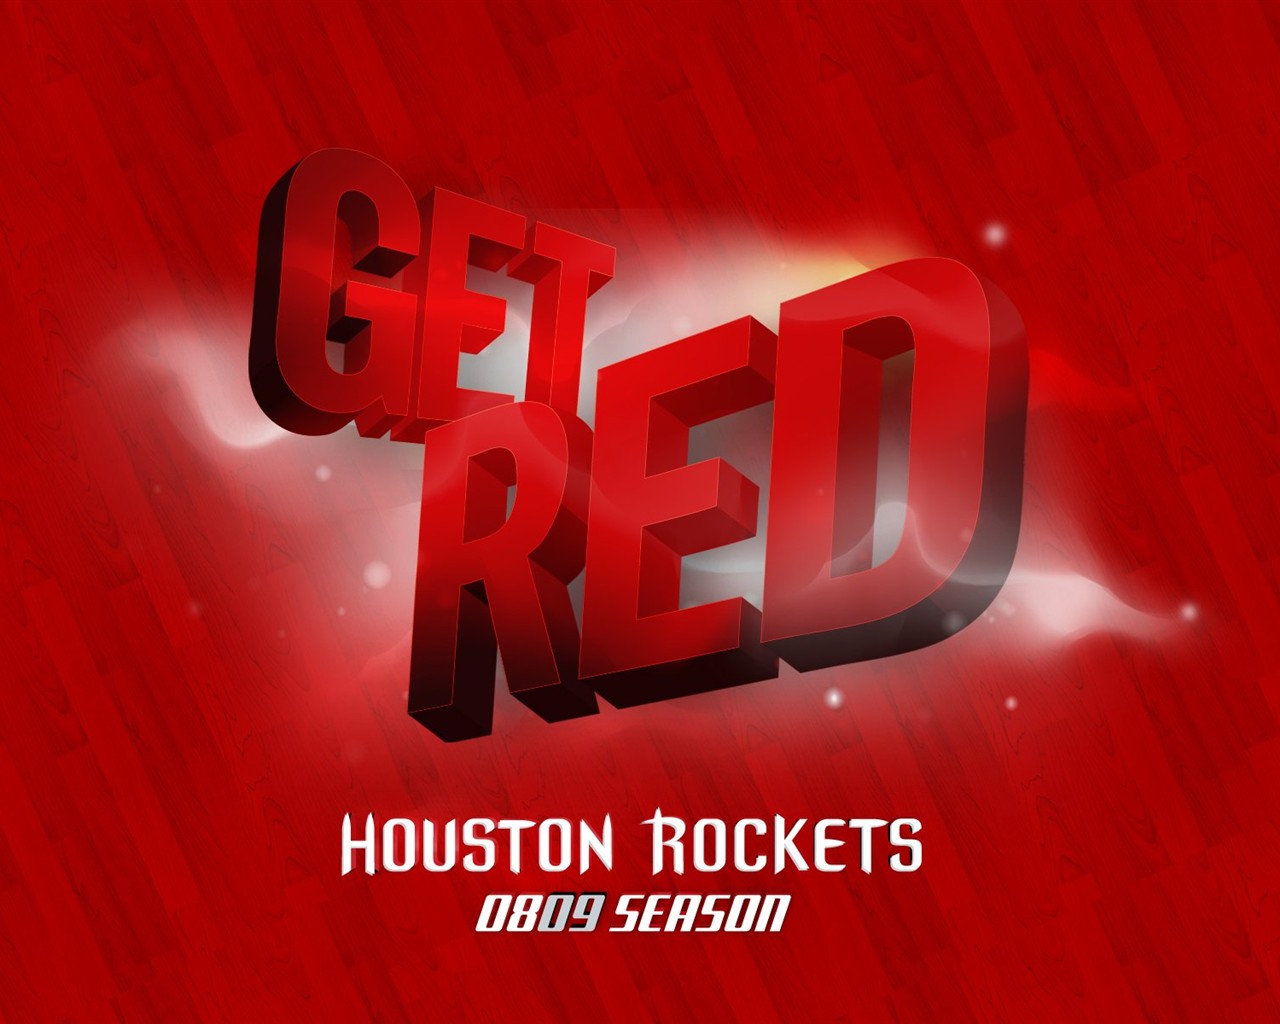 NBA Houston Rockets 2009 fondos de escritorio de los playoffs #5 - 1280x1024